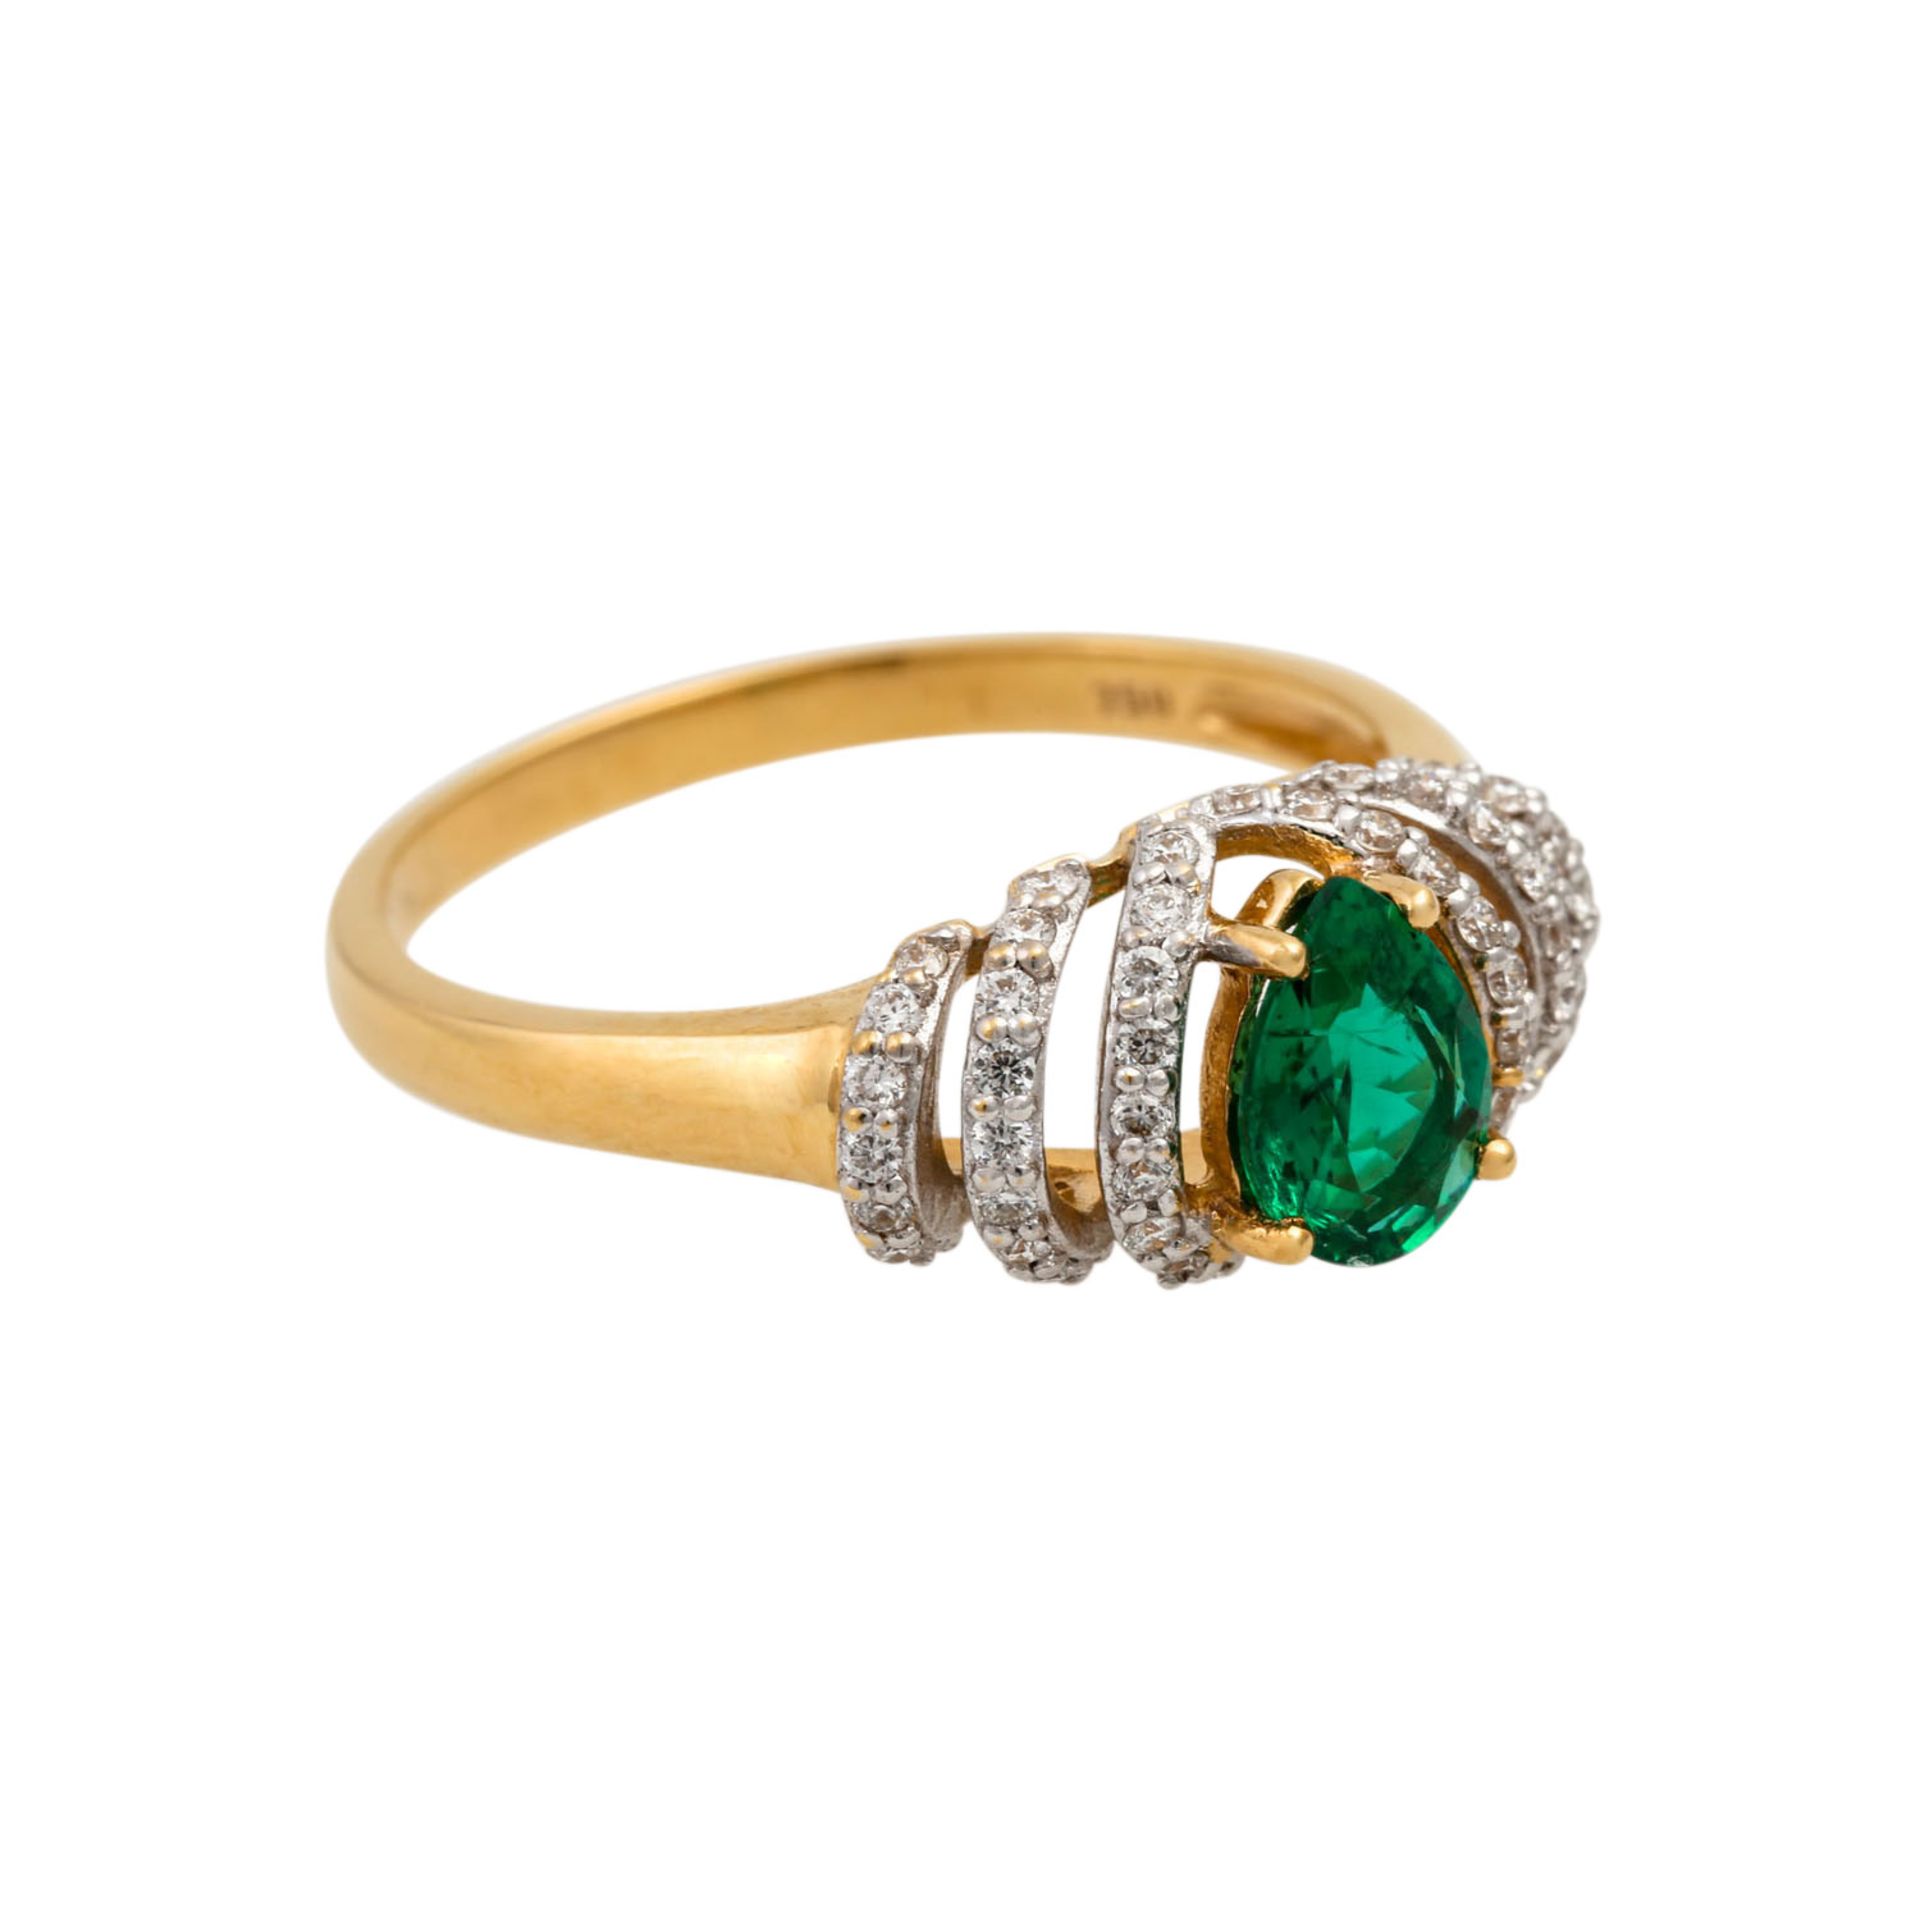 Ring mit Smaragdtropfen und kleinen Brillanten, zus. ca. 0,3 ct, mittl.-niedere Farbe